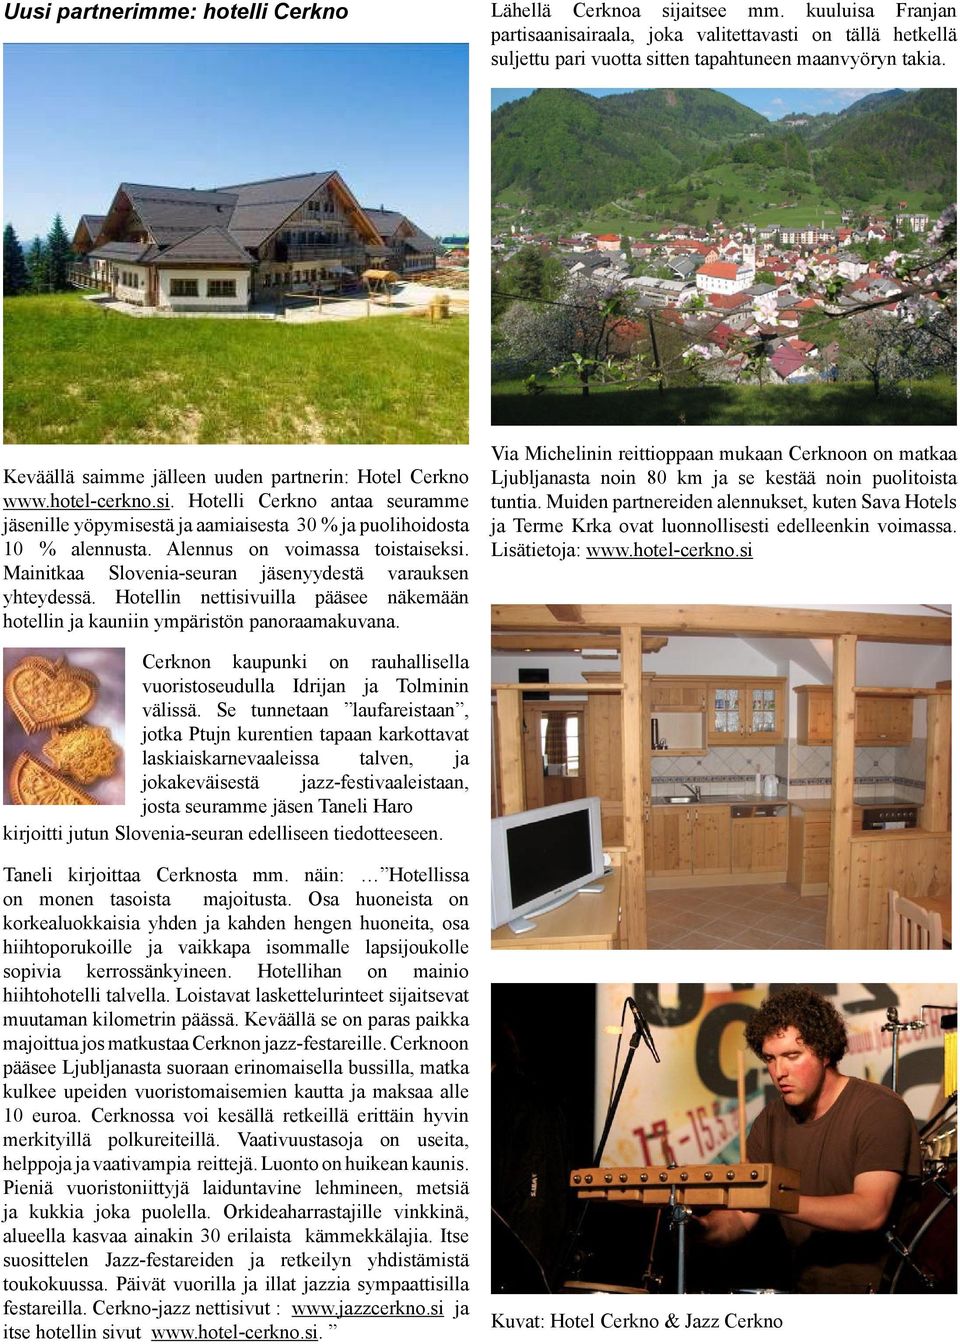 Alennus on voimassa toistaiseksi. Mainitkaa Slovenia-seuran jäsenyydestä varauksen yhteydessä. Hotellin nettisivuilla pääsee näkemään hotellin ja kauniin ympäristön panoraamakuvana.